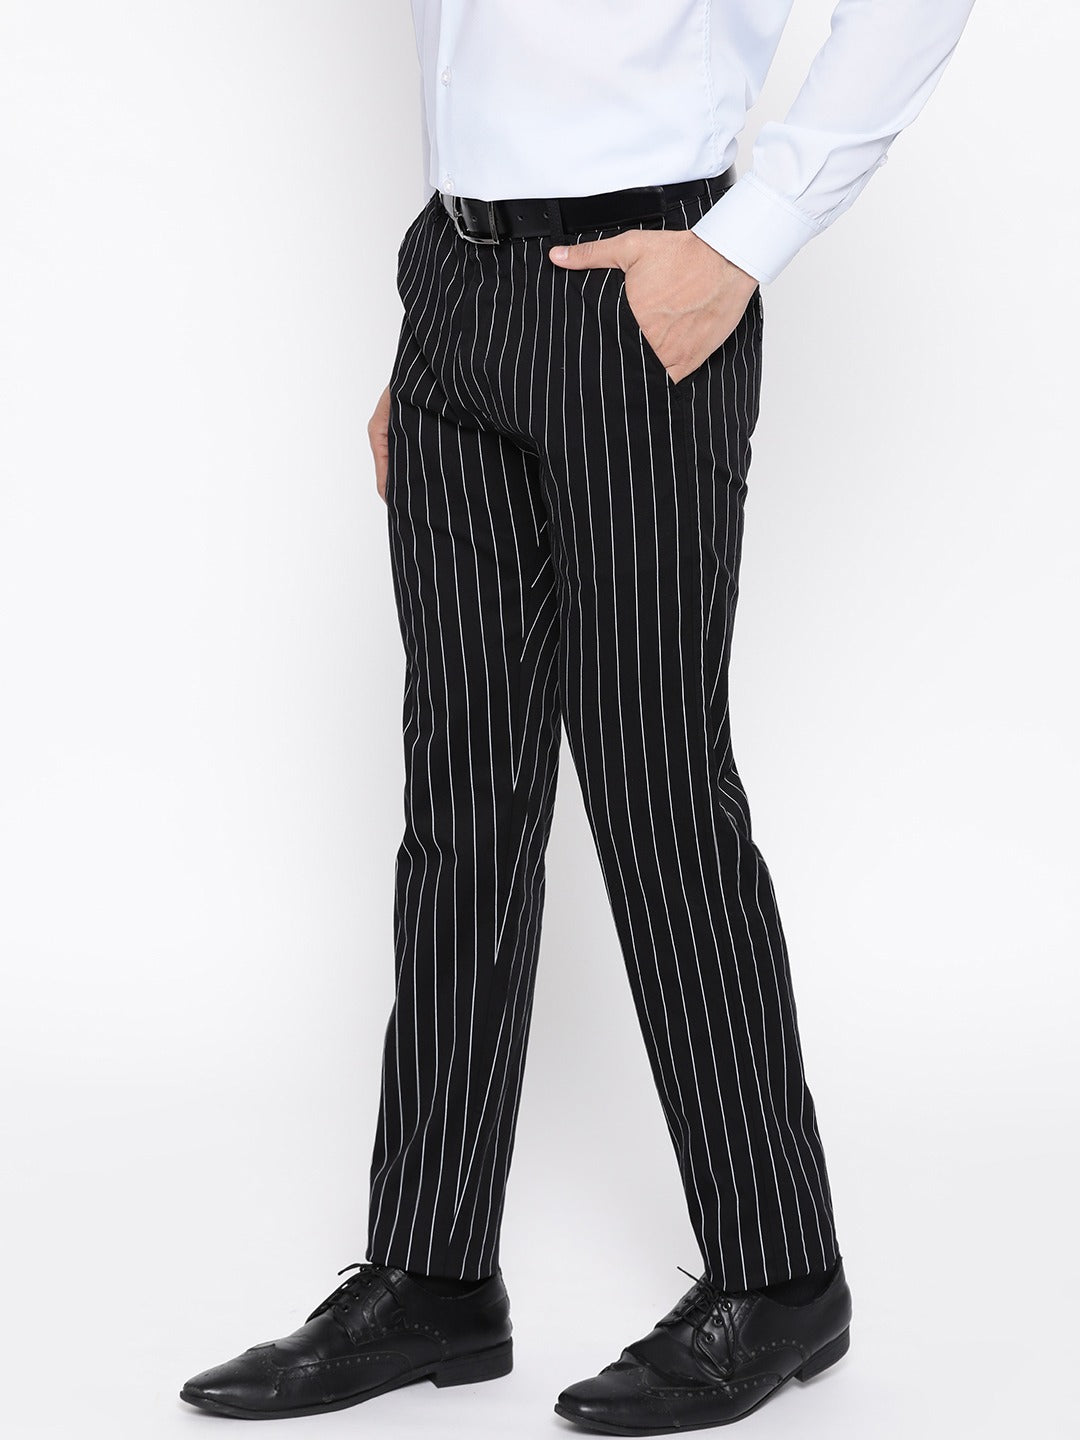 Retro & Vintage Unique Vintage Black & White Pinstripe Sailor Pants |  Unique Vintage